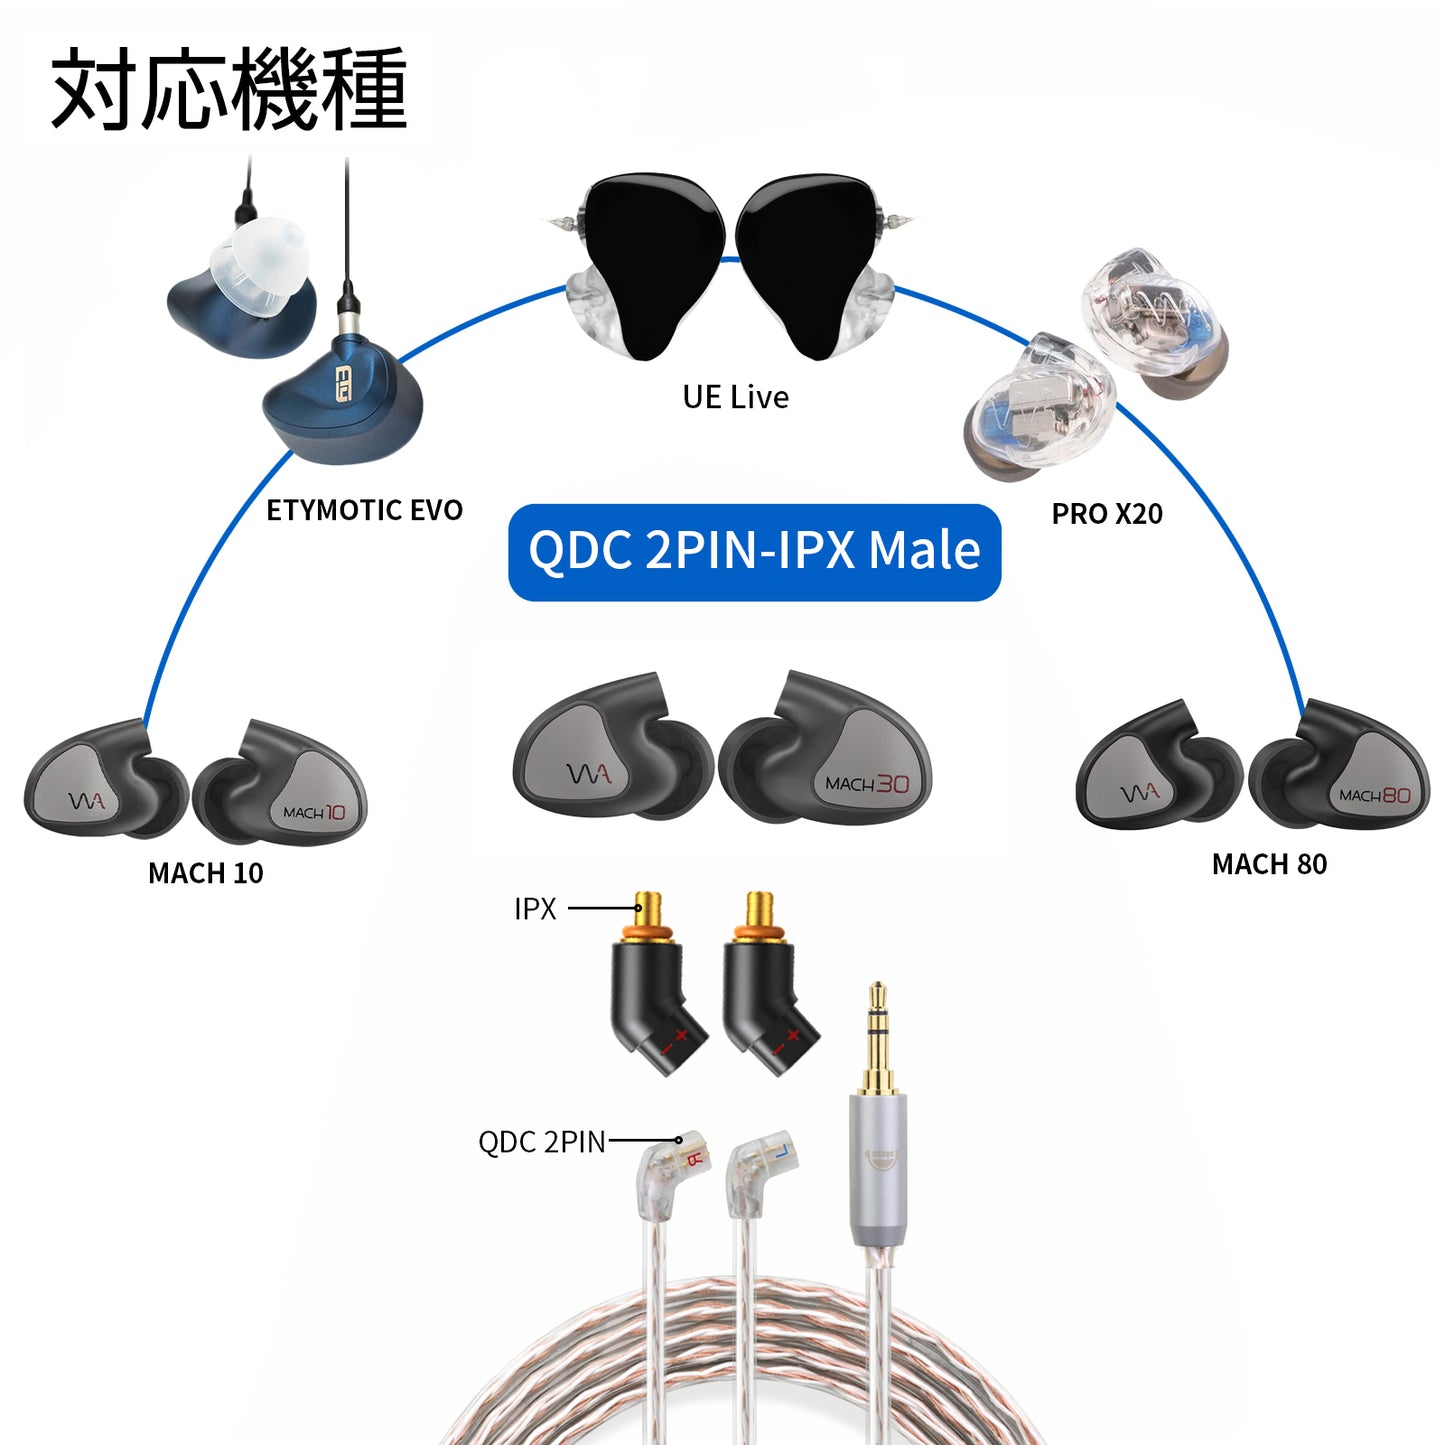 Cooyin QDC 2pin (リケーブル側) to IPX (イヤホン側) アダプター コネクター スライダー 金メッキプラグ 統合成形技術 音質劣化なし簡潔 精緻 線材テスト作業用 ミニタイプ